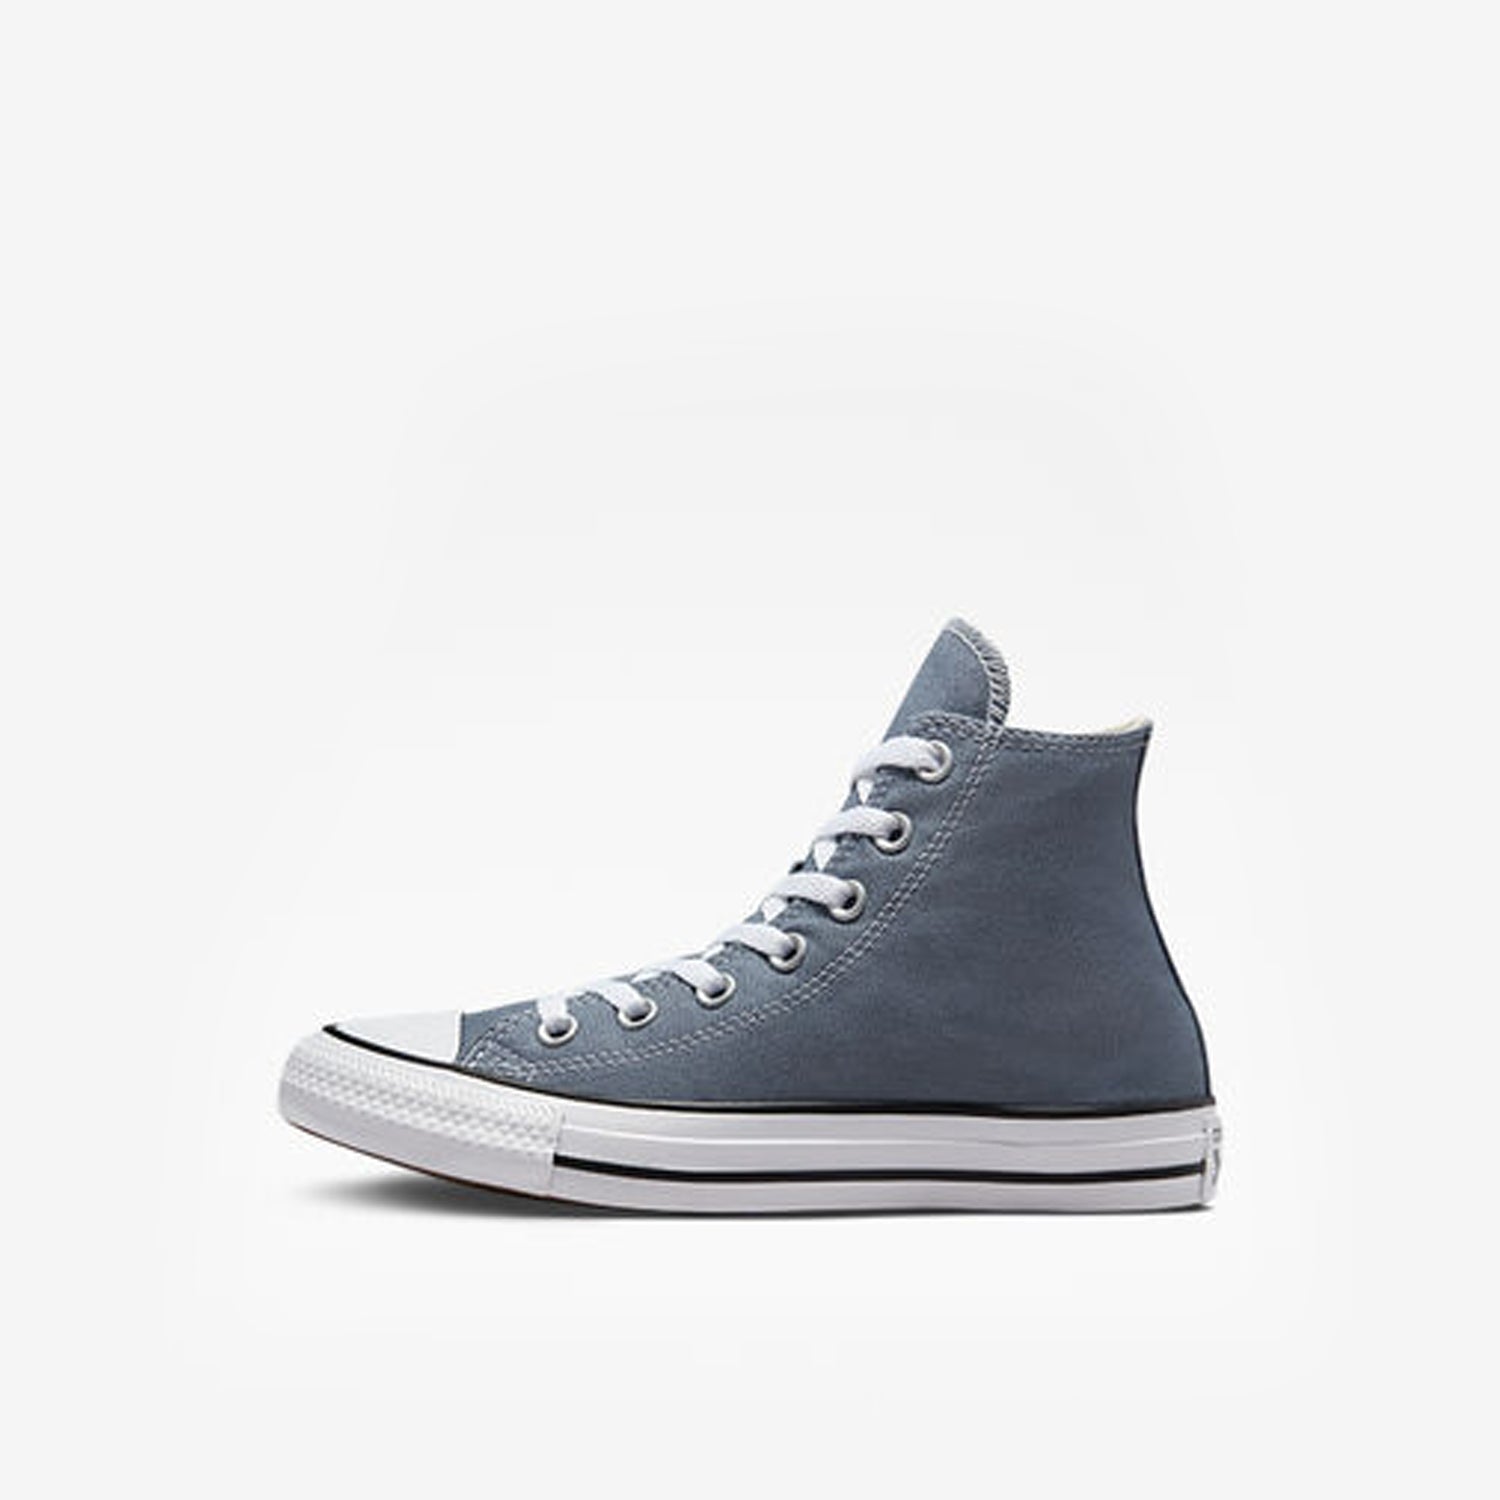 אולסטאר נעלי סניקרס גבוהות בצבע כחול בהיר נשים וגברים-Converse All Star-35-נאקו